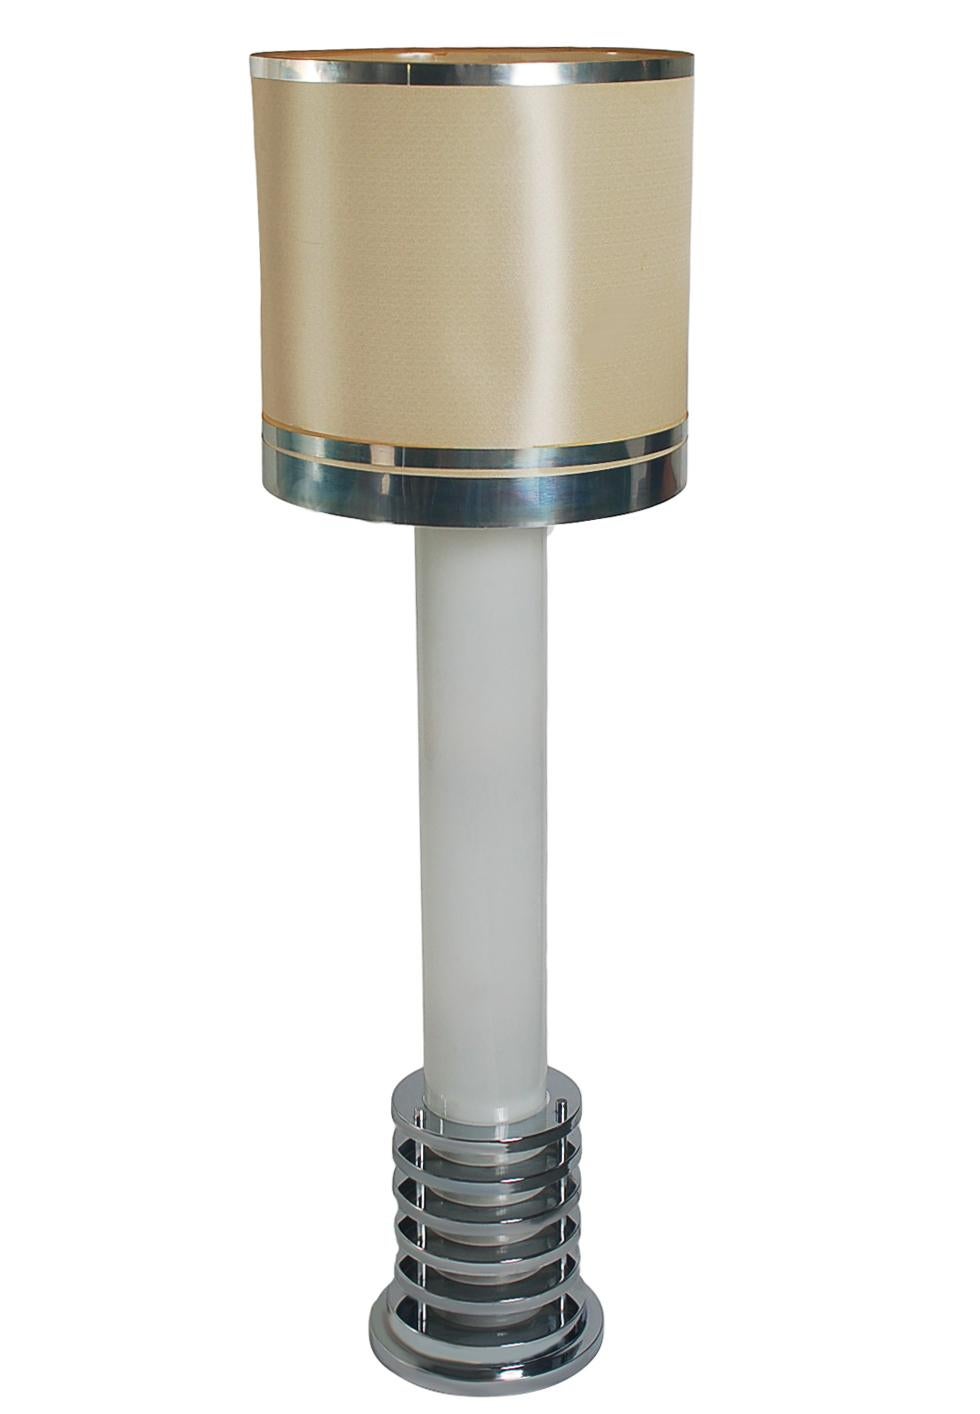 Une lampe élégante, moderne et bien fabriquée, provenant d'Italie vers les années 1970. Il comporte une grande colonne centrale en verre avec des accents art déco chromés. L'abat-jour présente des problèmes d'état et ne sera pas inclus.